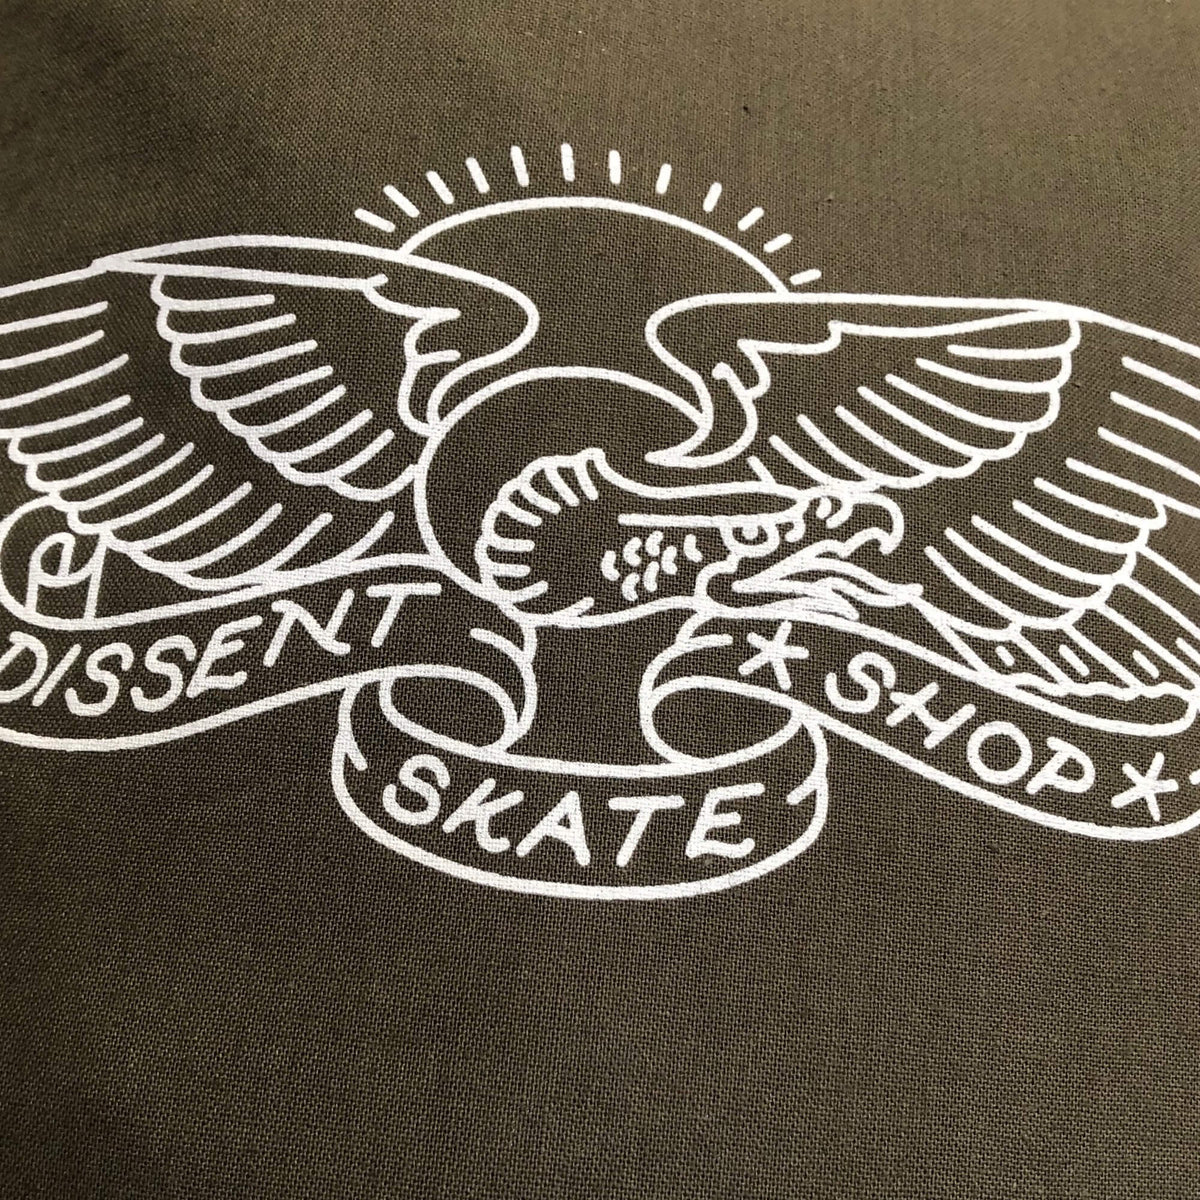 Dissent Skateboarding Eagle Logo Tote Bag For Life Olive Green